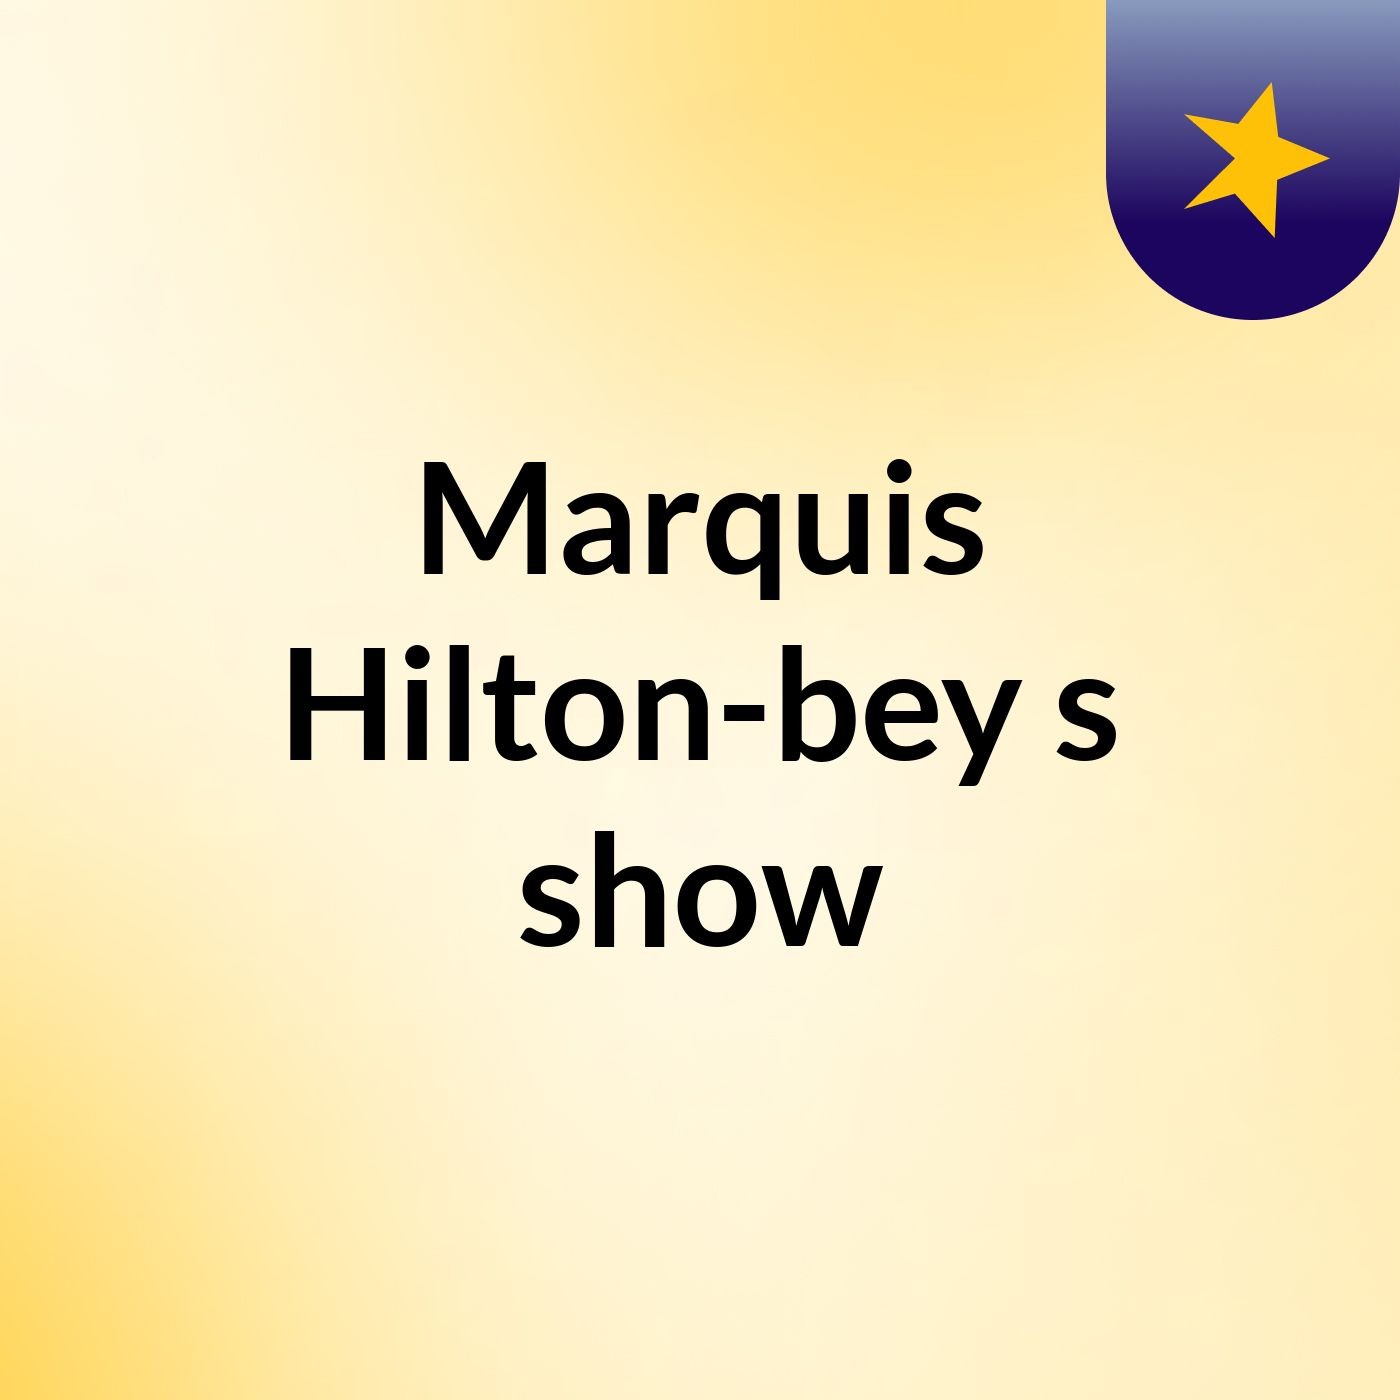 Marquis Hilton-bey's show